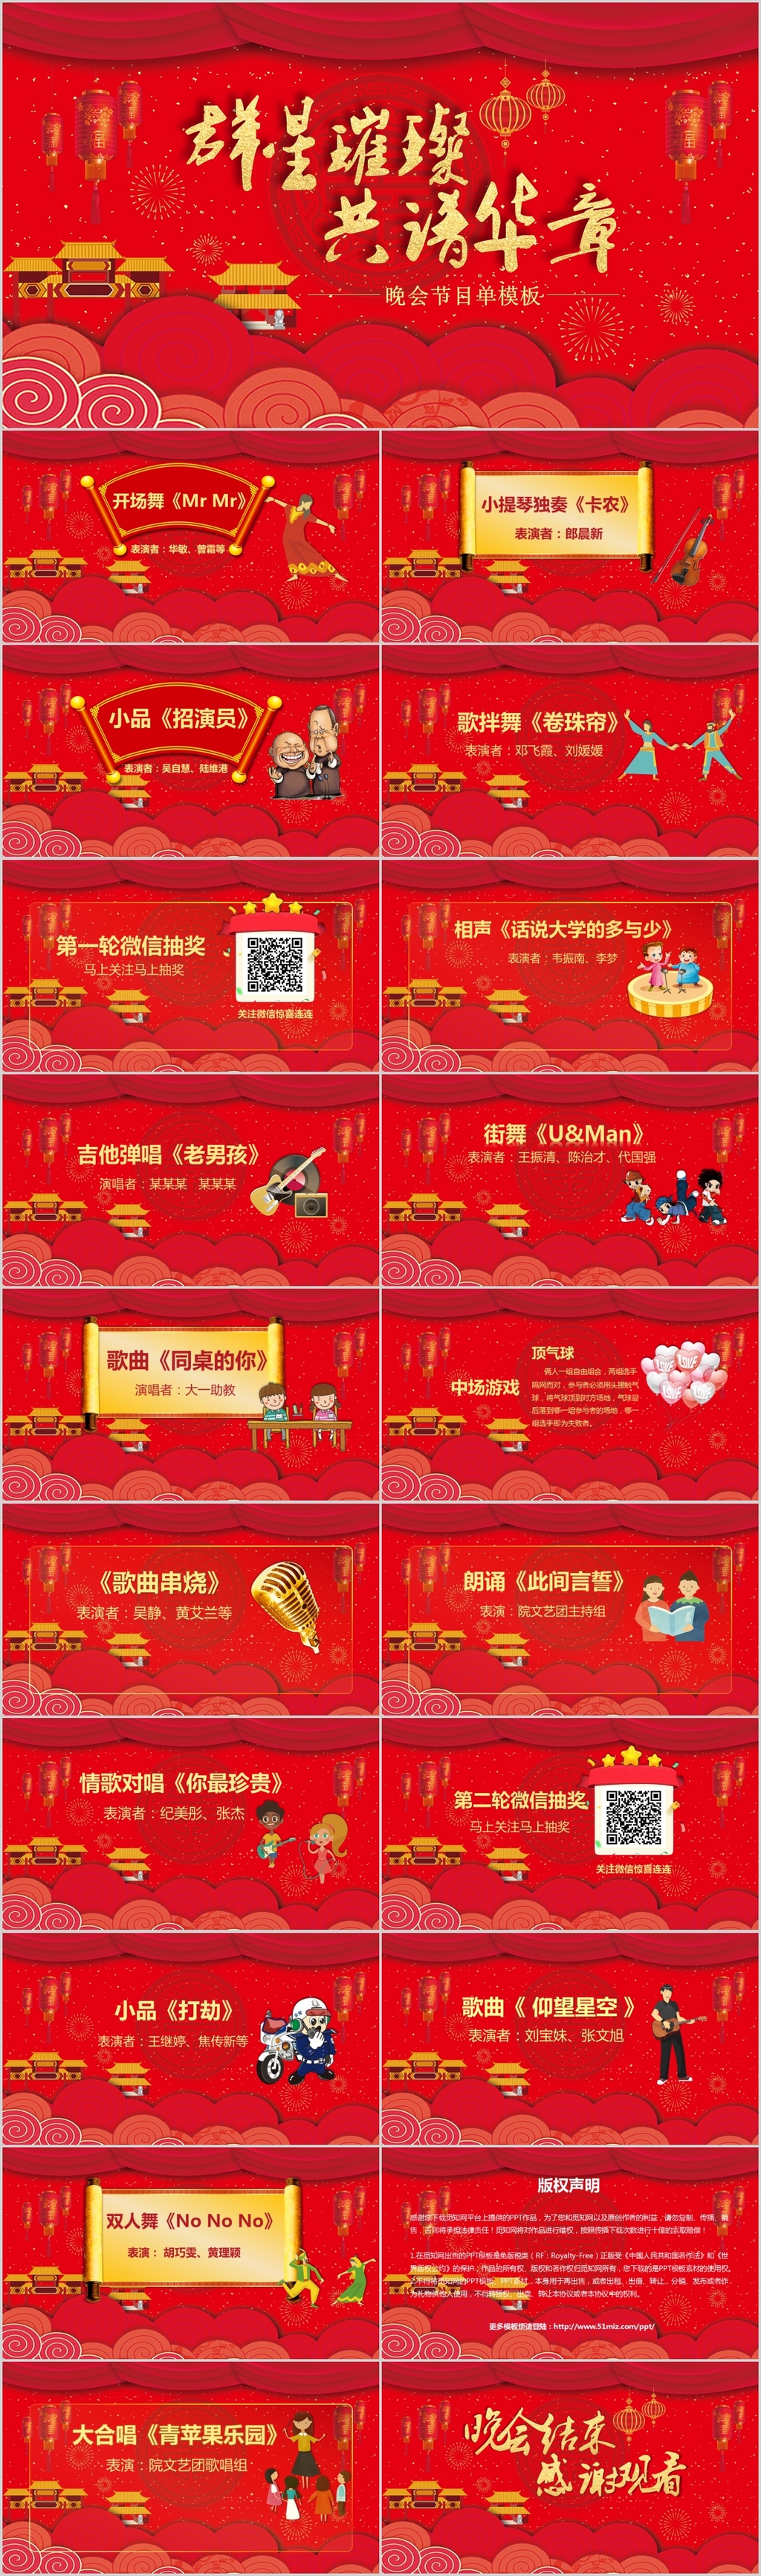 中国红中国年新年春节联欢晚会节目单PPT